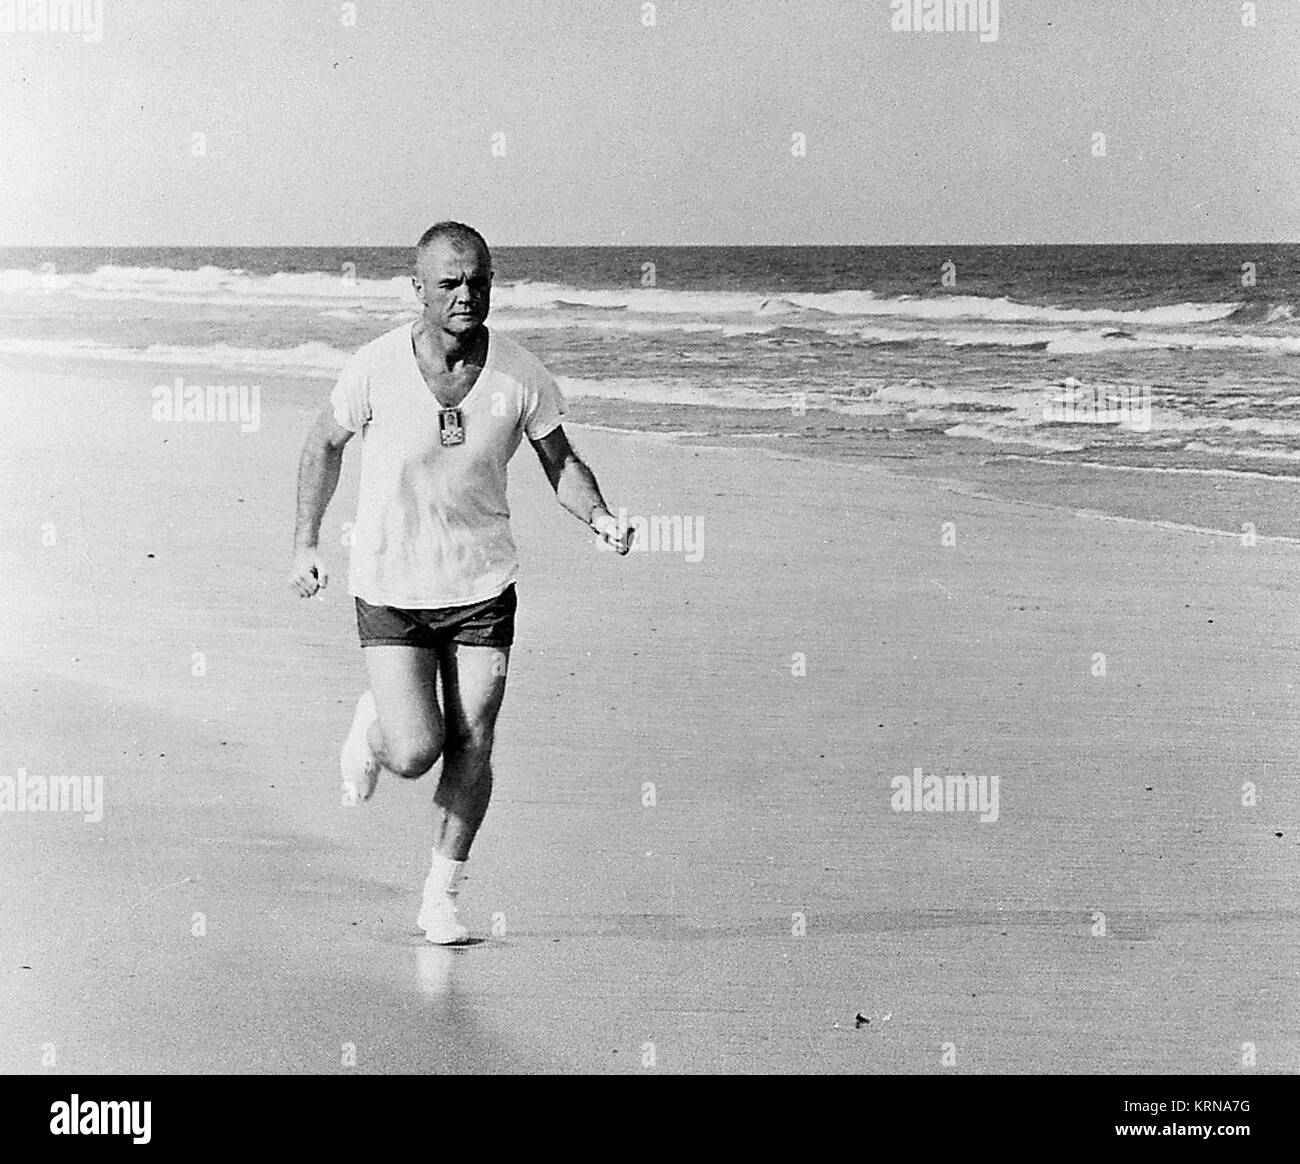 1962 - Entlang der Strand in Cape Canaveral, Florida, Astronaut John Glenn jr., Pilot der Mercury-Atlas 6 Mission, beteiligt sich an eine strenge körperliche Training Programm, wie er durch häufige Betrieb veranschaulicht. Photo Credit: NASA/KSC-JohnGlenn -0005 (31144829360) Stockfoto